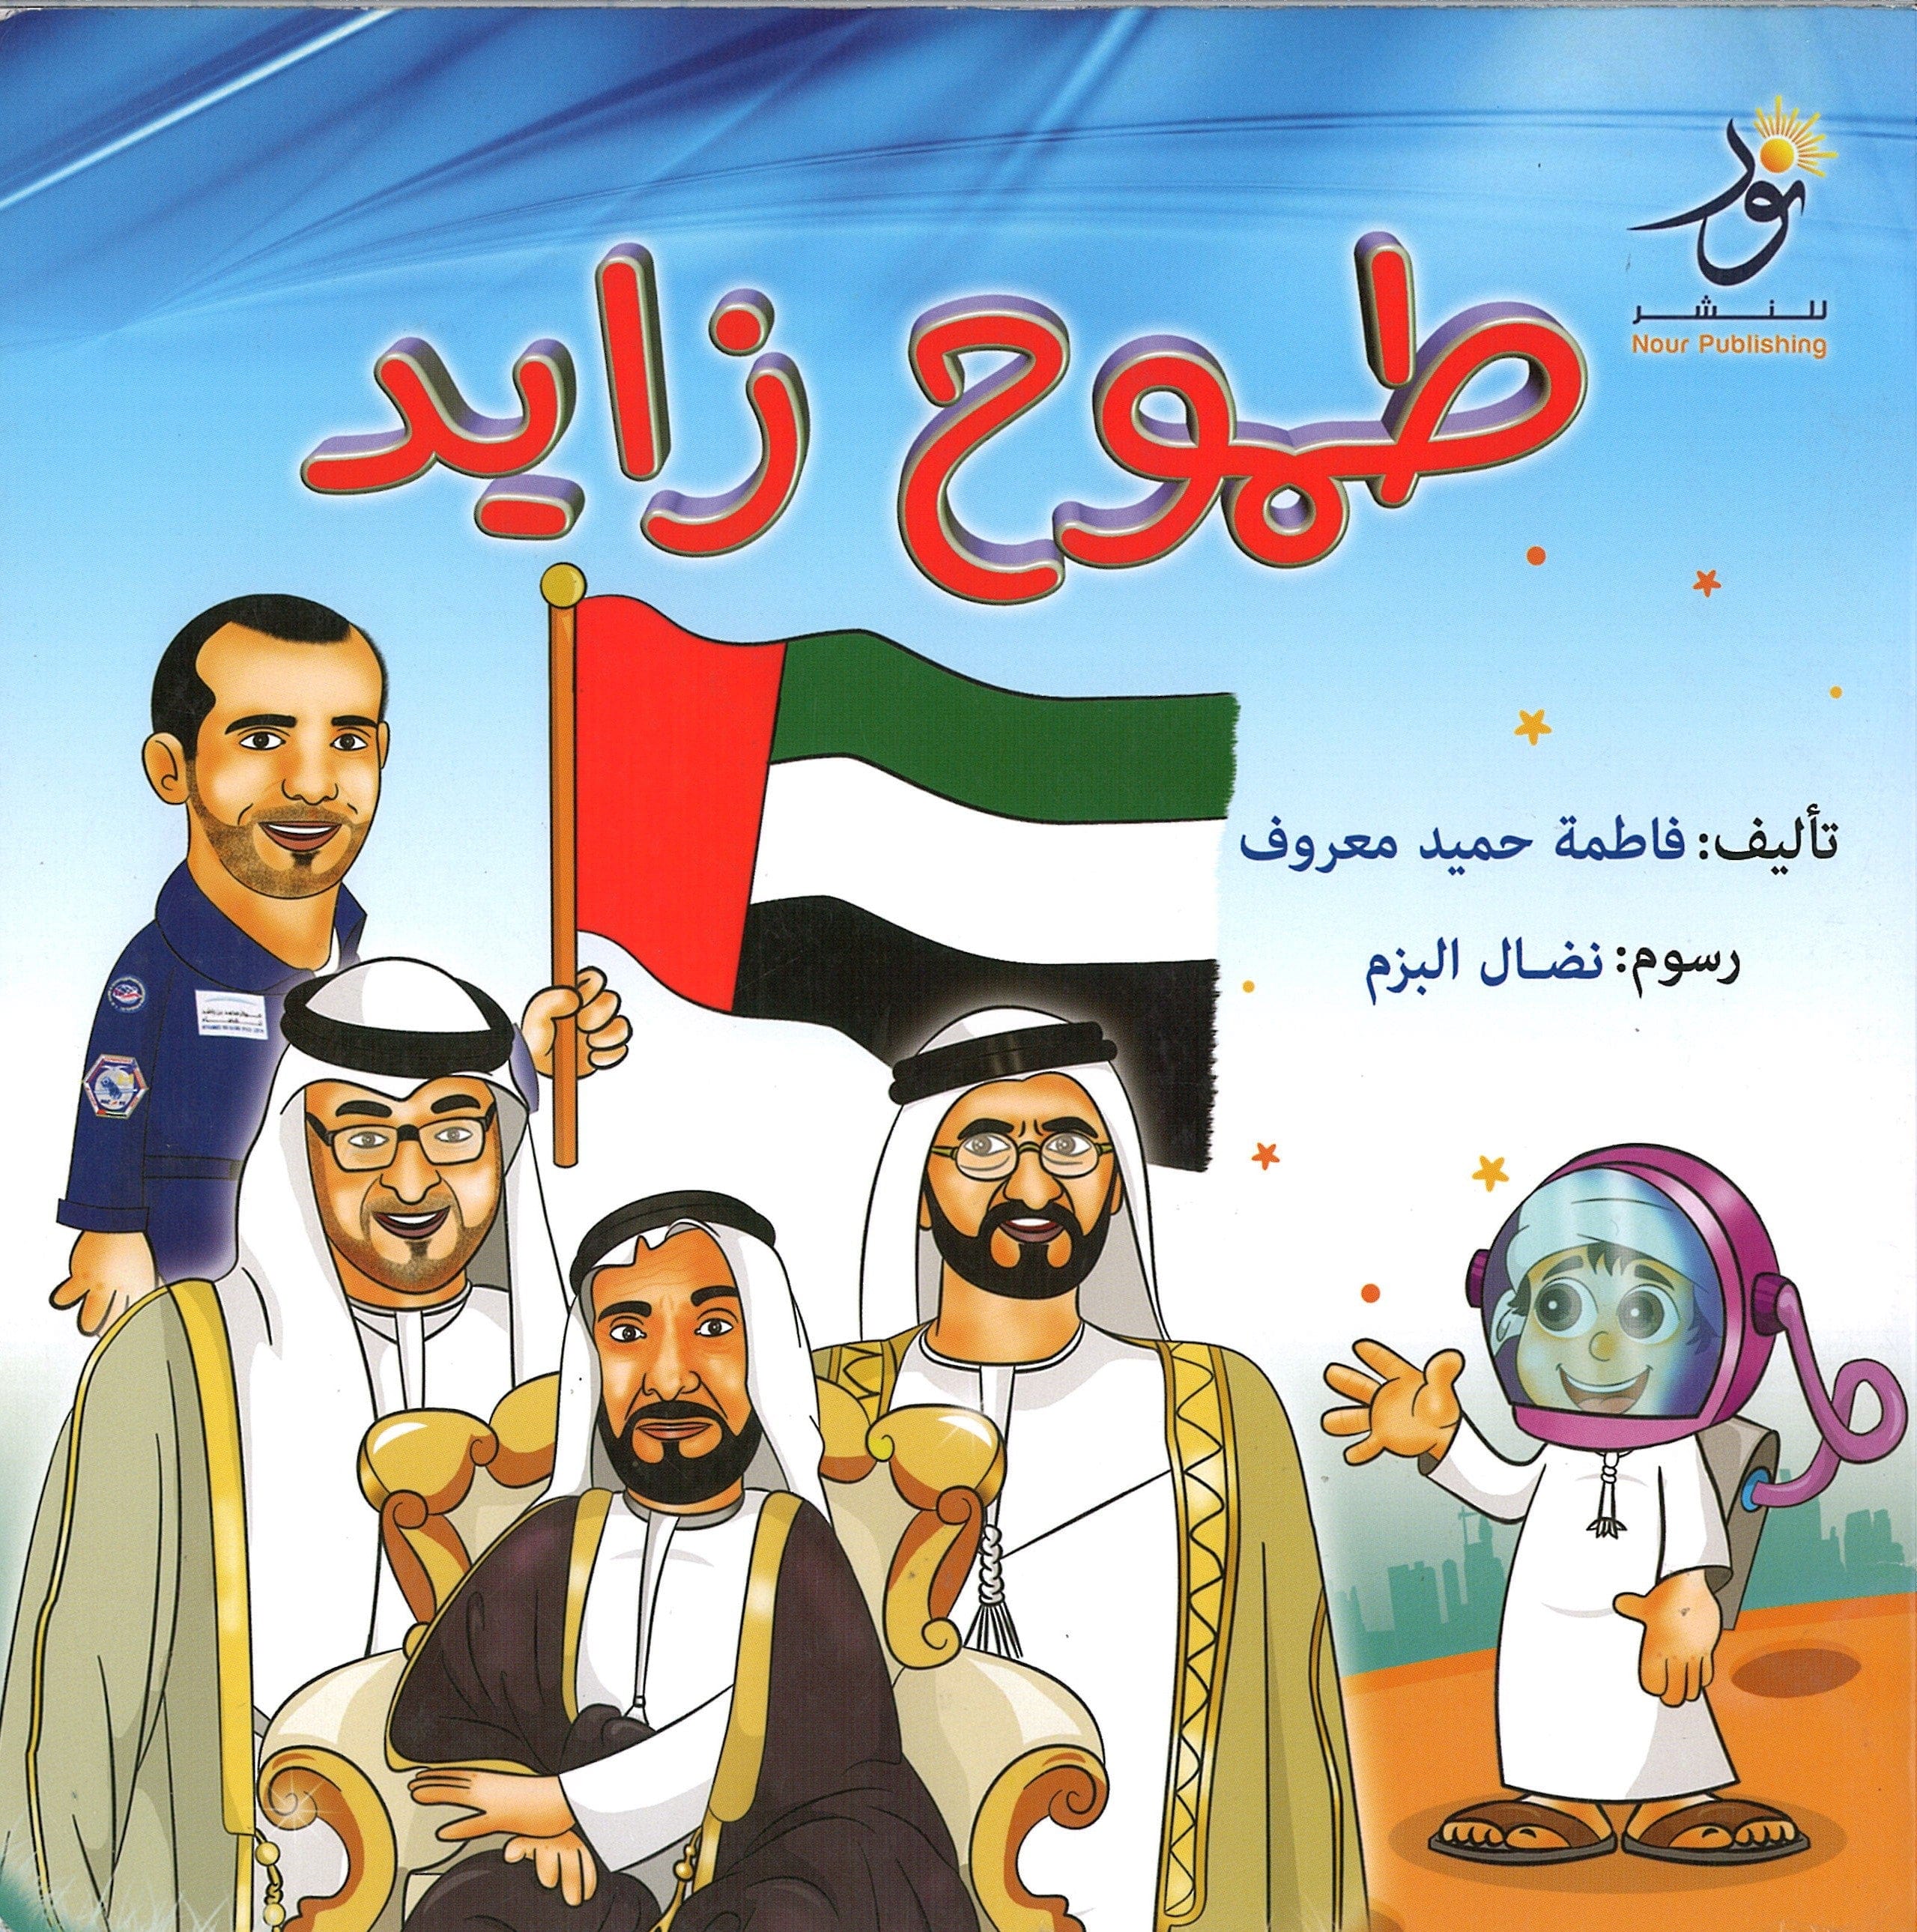 Zayed's Ambition